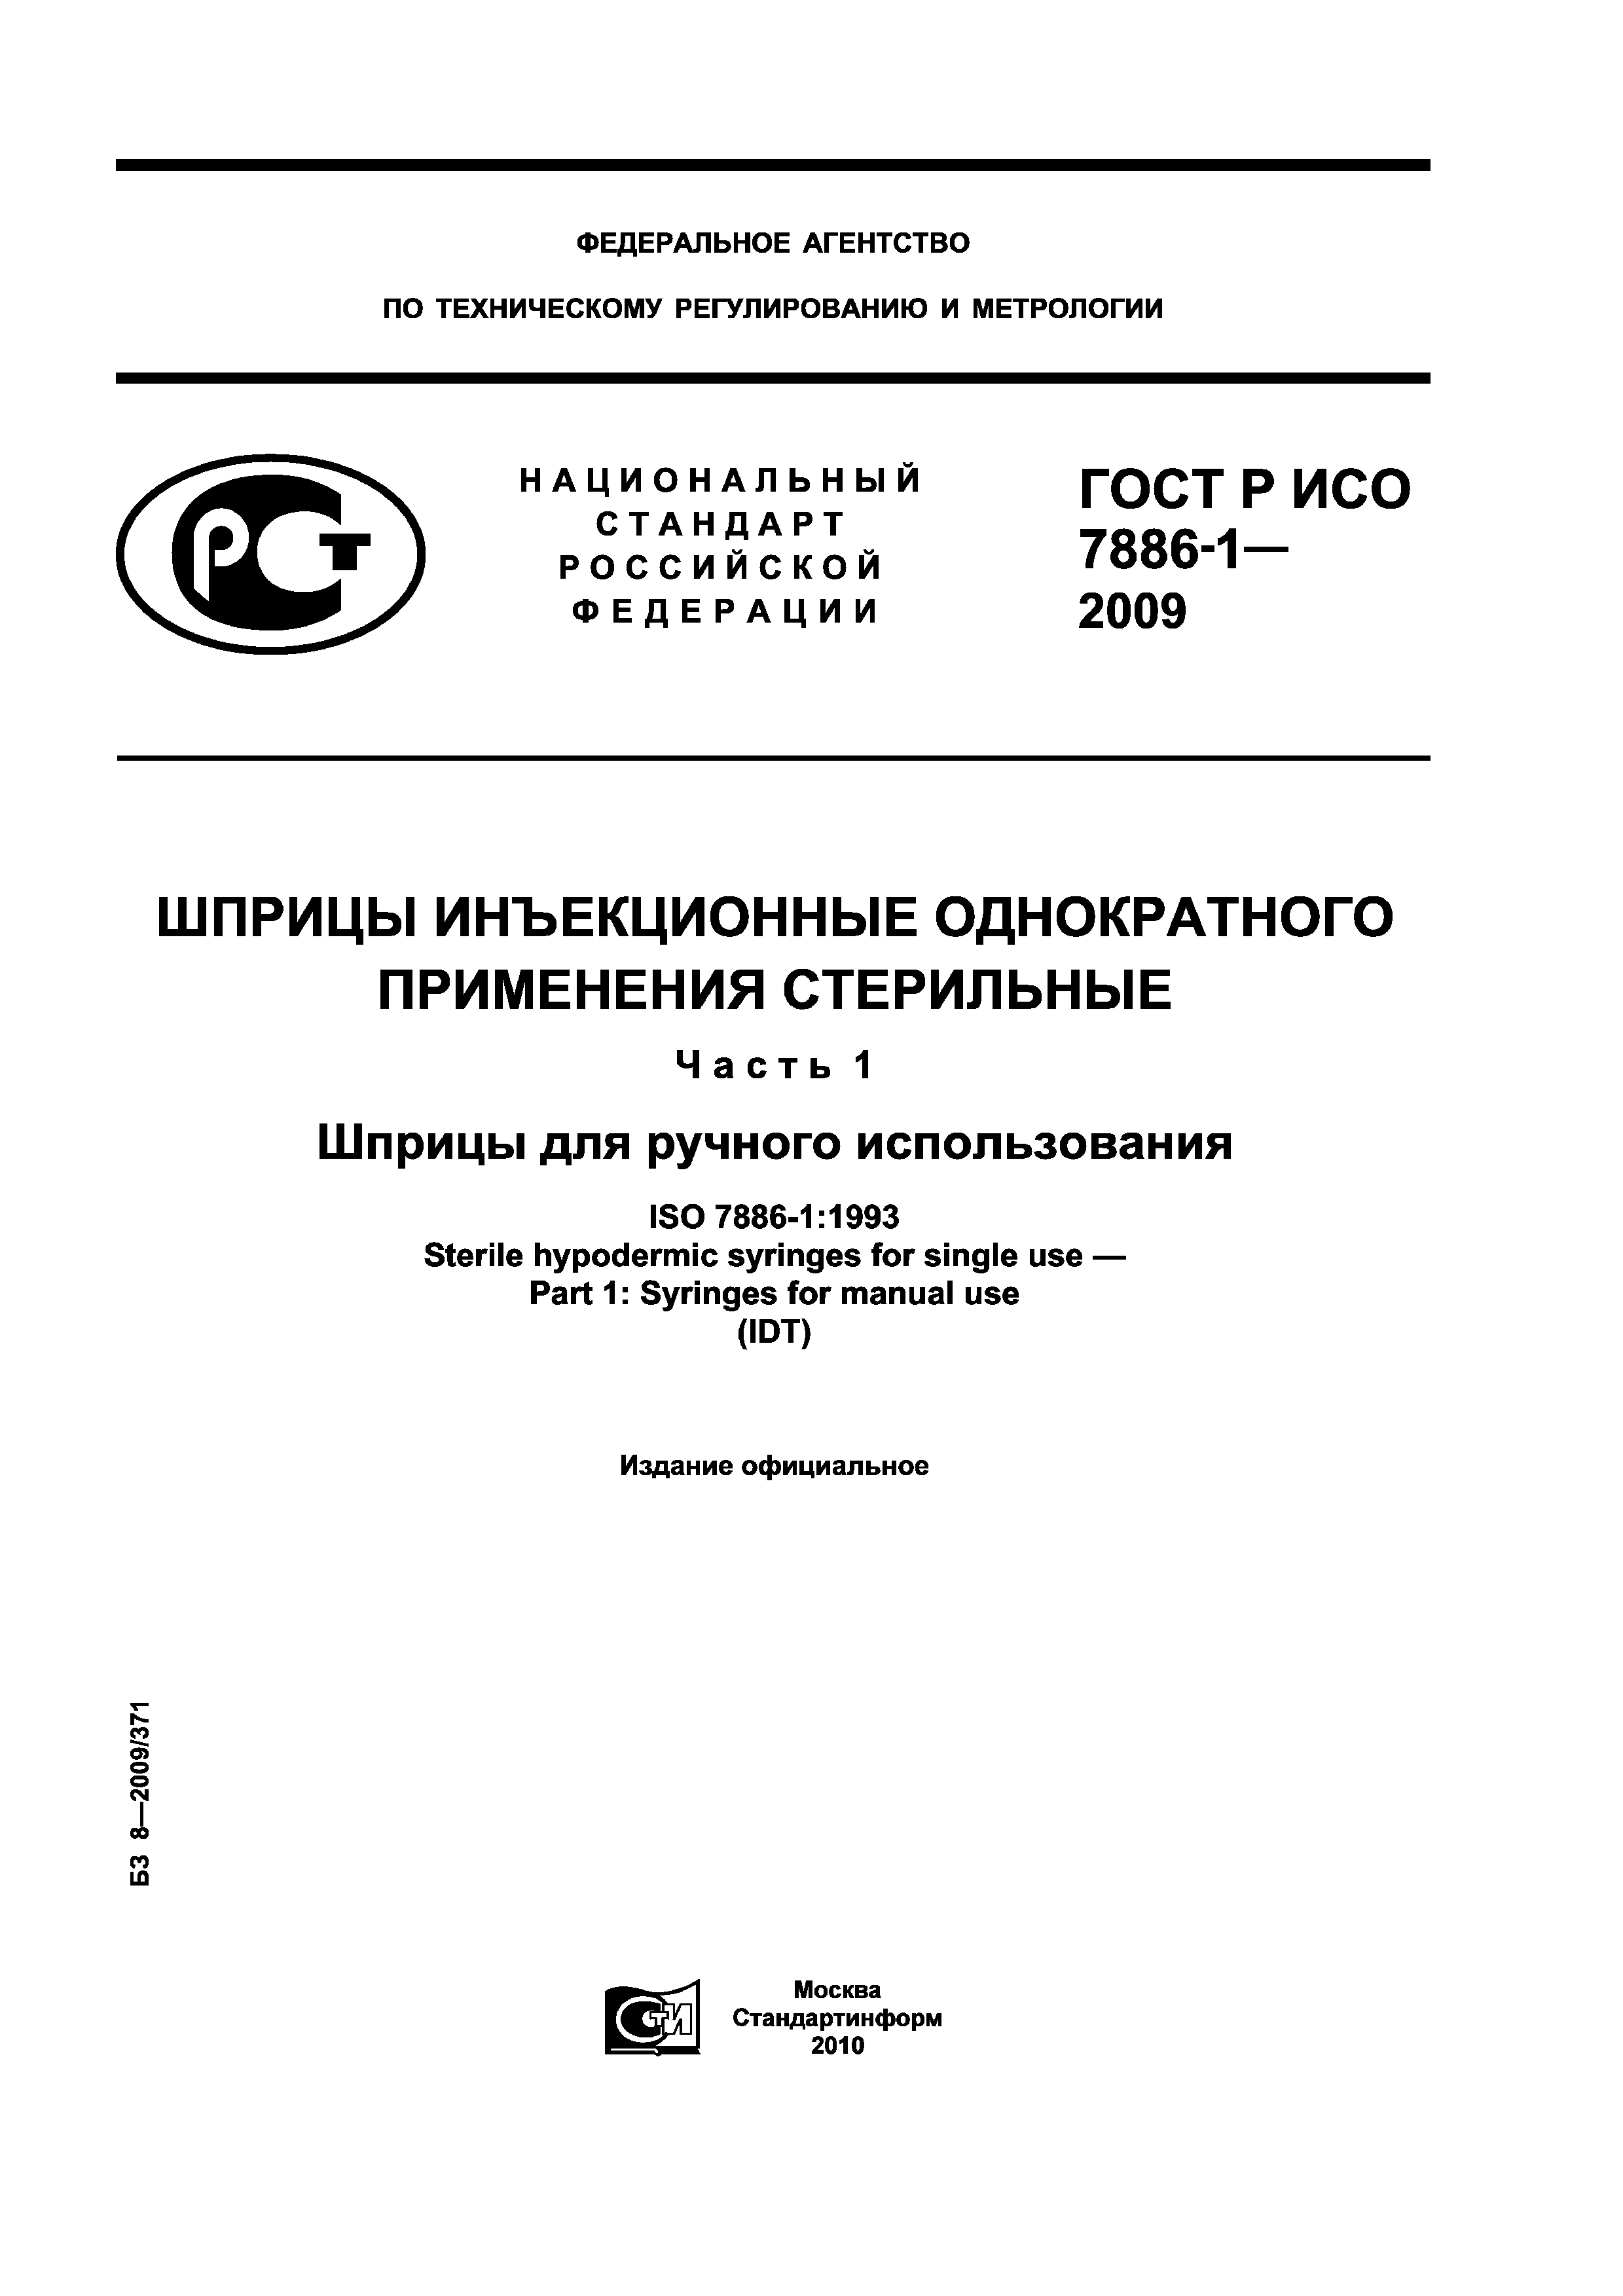 ГОСТ Р ИСО 7886-1-2009